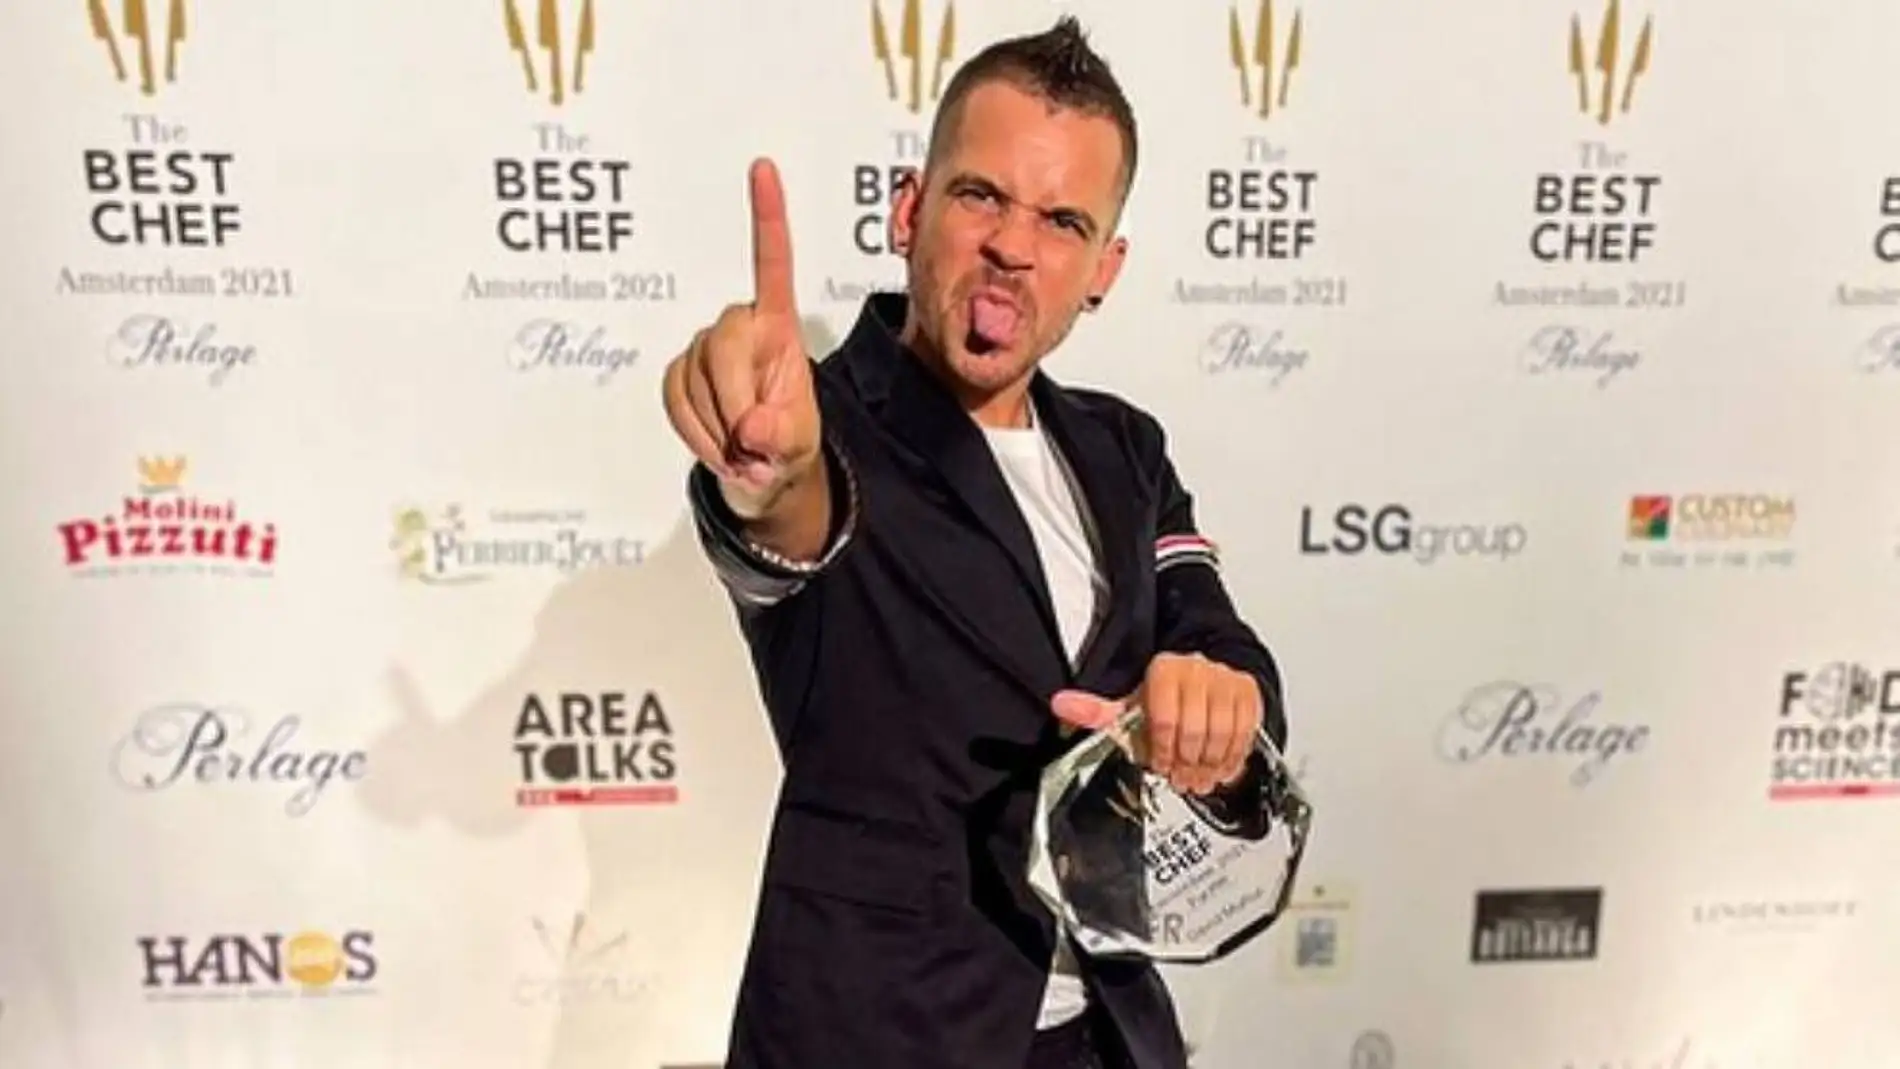 Dabiz Muñoz, el mejor cocinero del mundo según &#39;The Best Chef Awards 2021&#39;